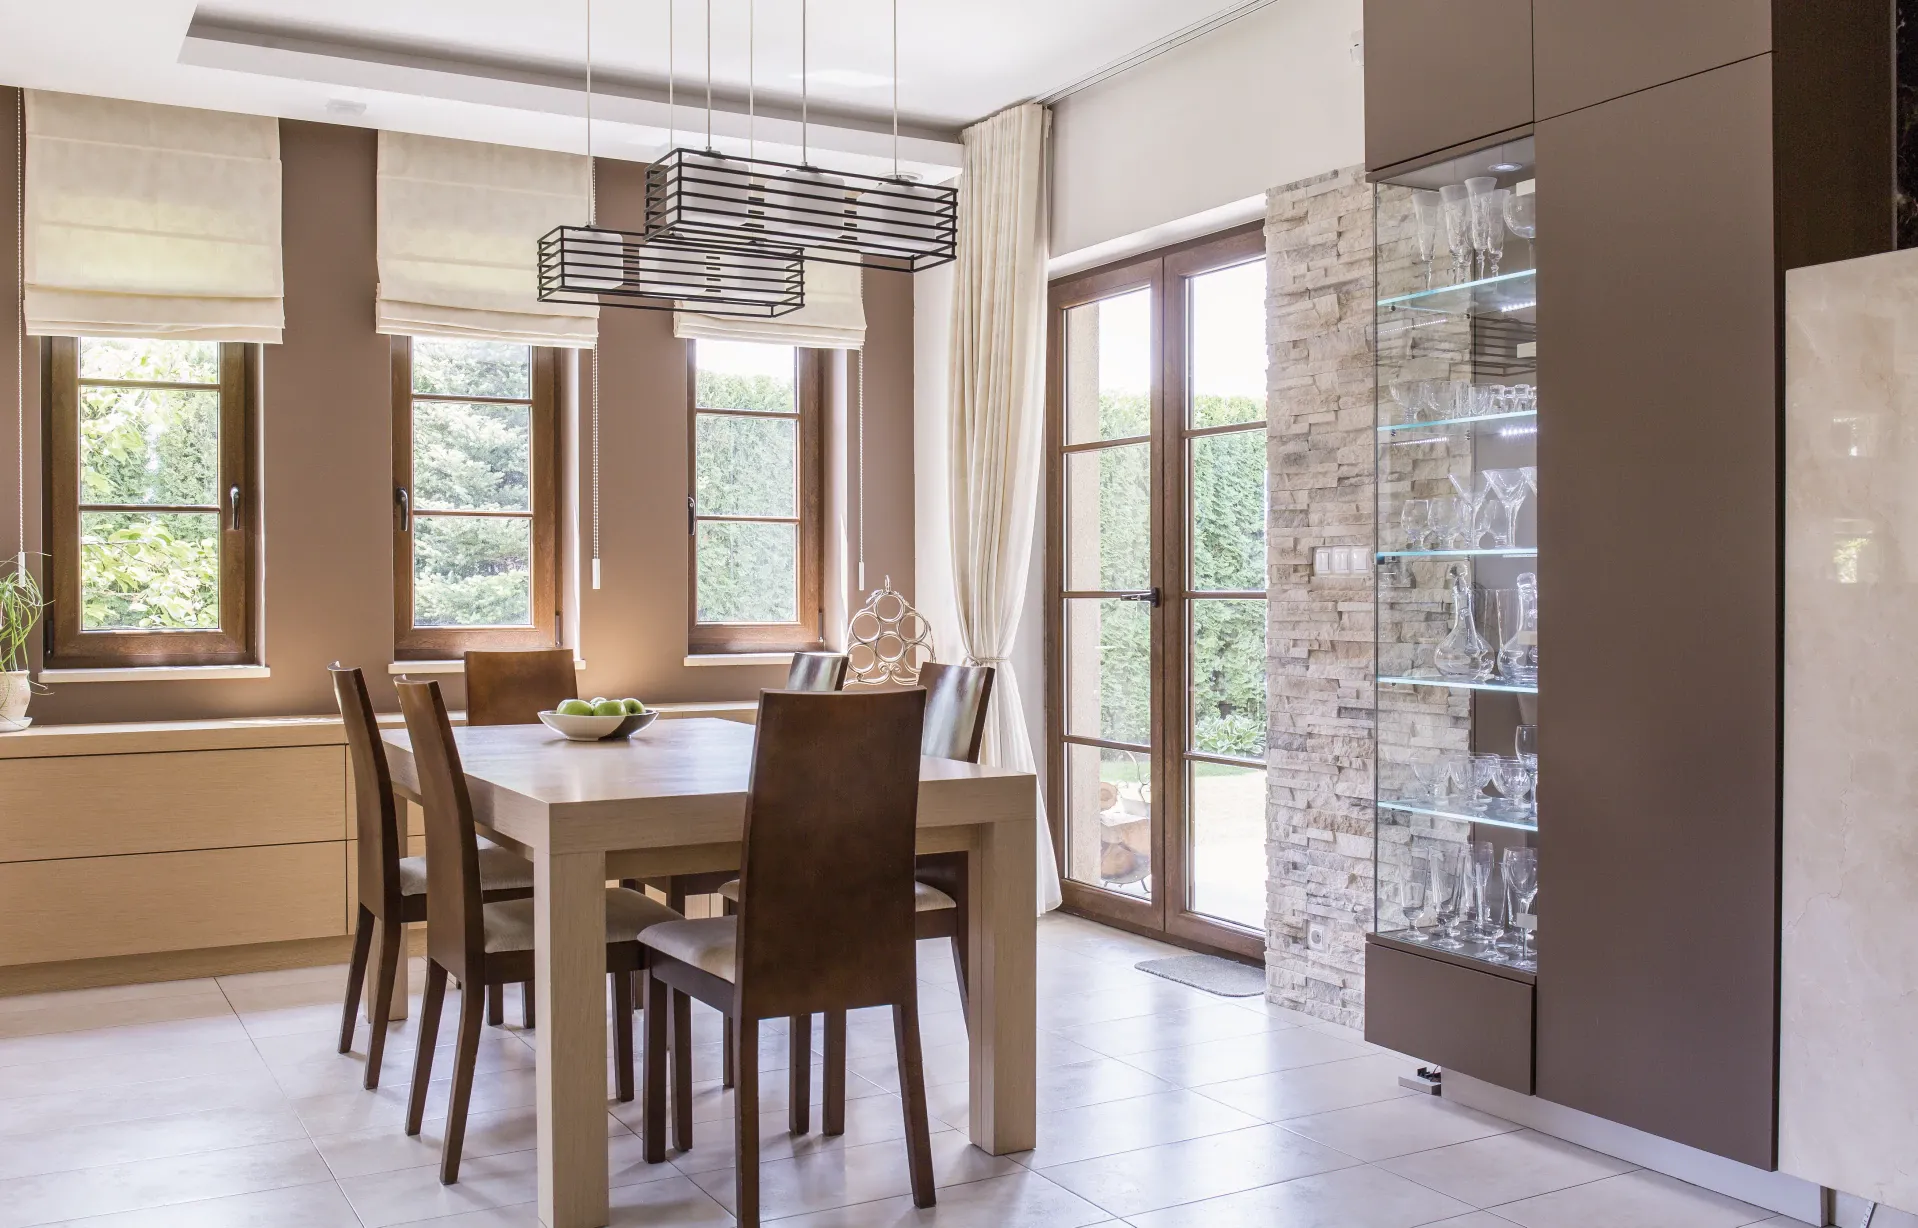 Las persianas romanas han hecho un comeback al mundo de diseño y deocración de interiores. Su estilo clásico y elegante las hacen unas persianas ideales para comedores y salas.